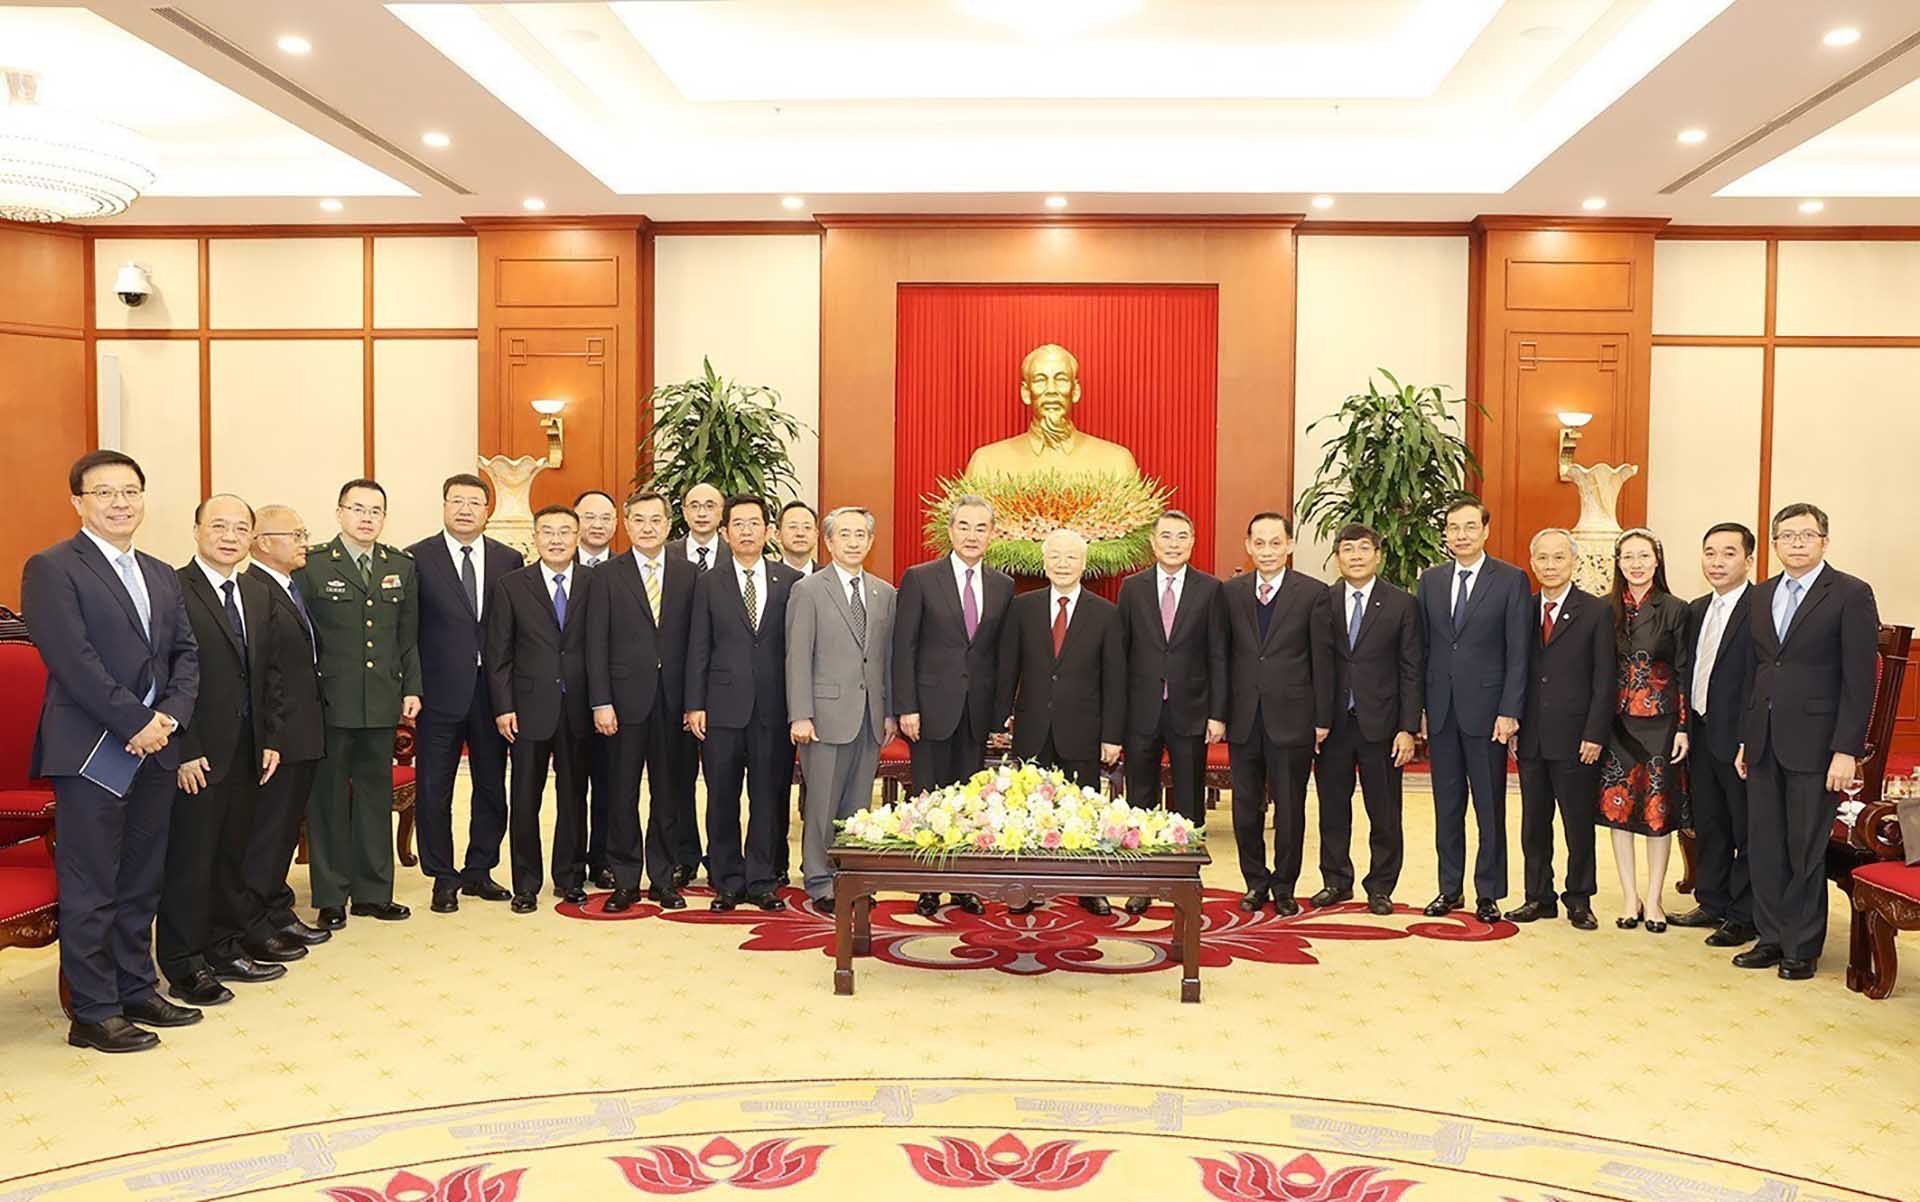 Tổng Bí thư Nguyễn Phú Trọng và đồng chí Vương Nghị cùng các đại biểu chụp ảnh chung. (Nguồn: TTXVN)